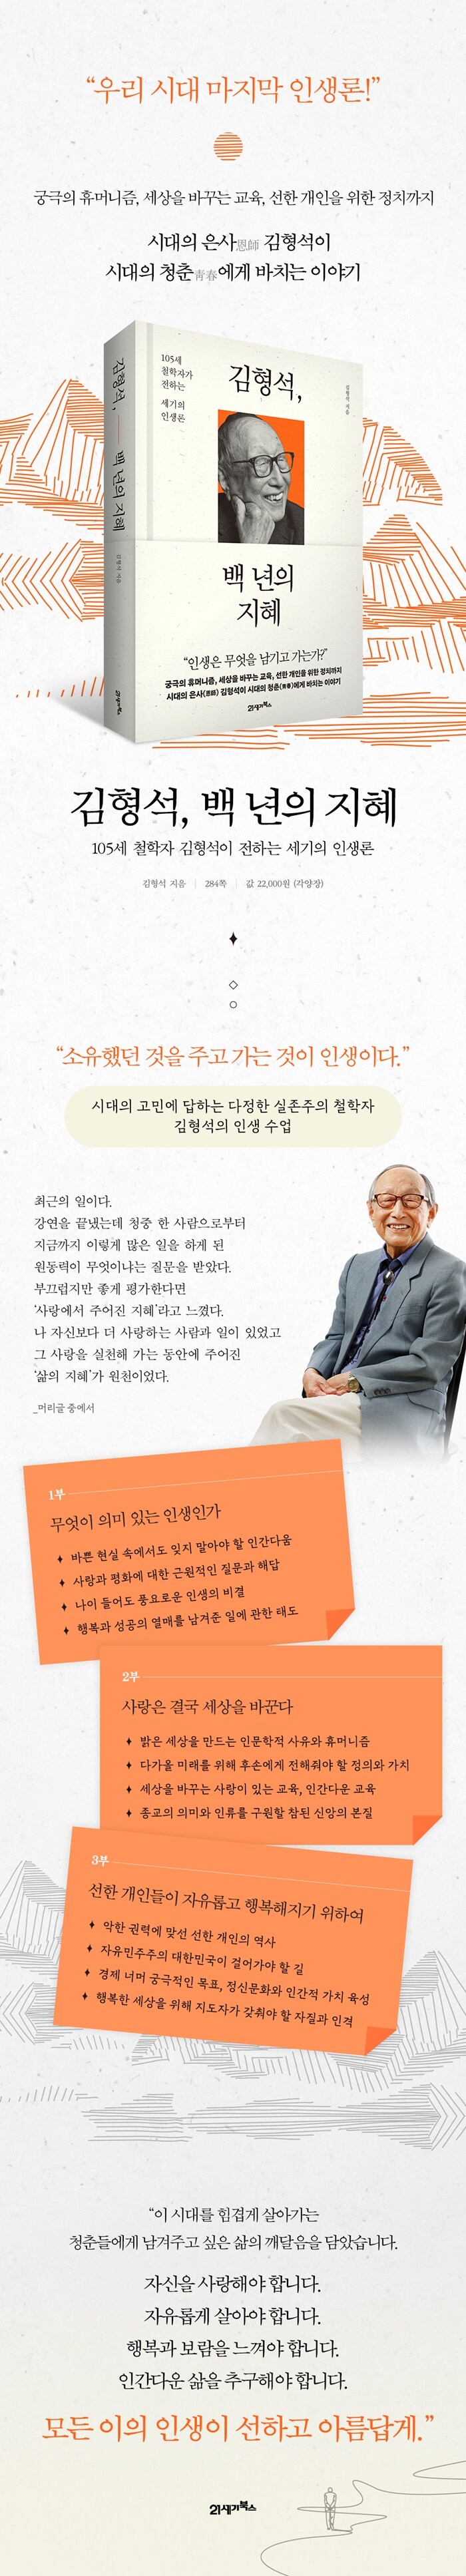 김형석, 백 년의 지혜 - 105세 철학자가 전하는 세기의 인생론